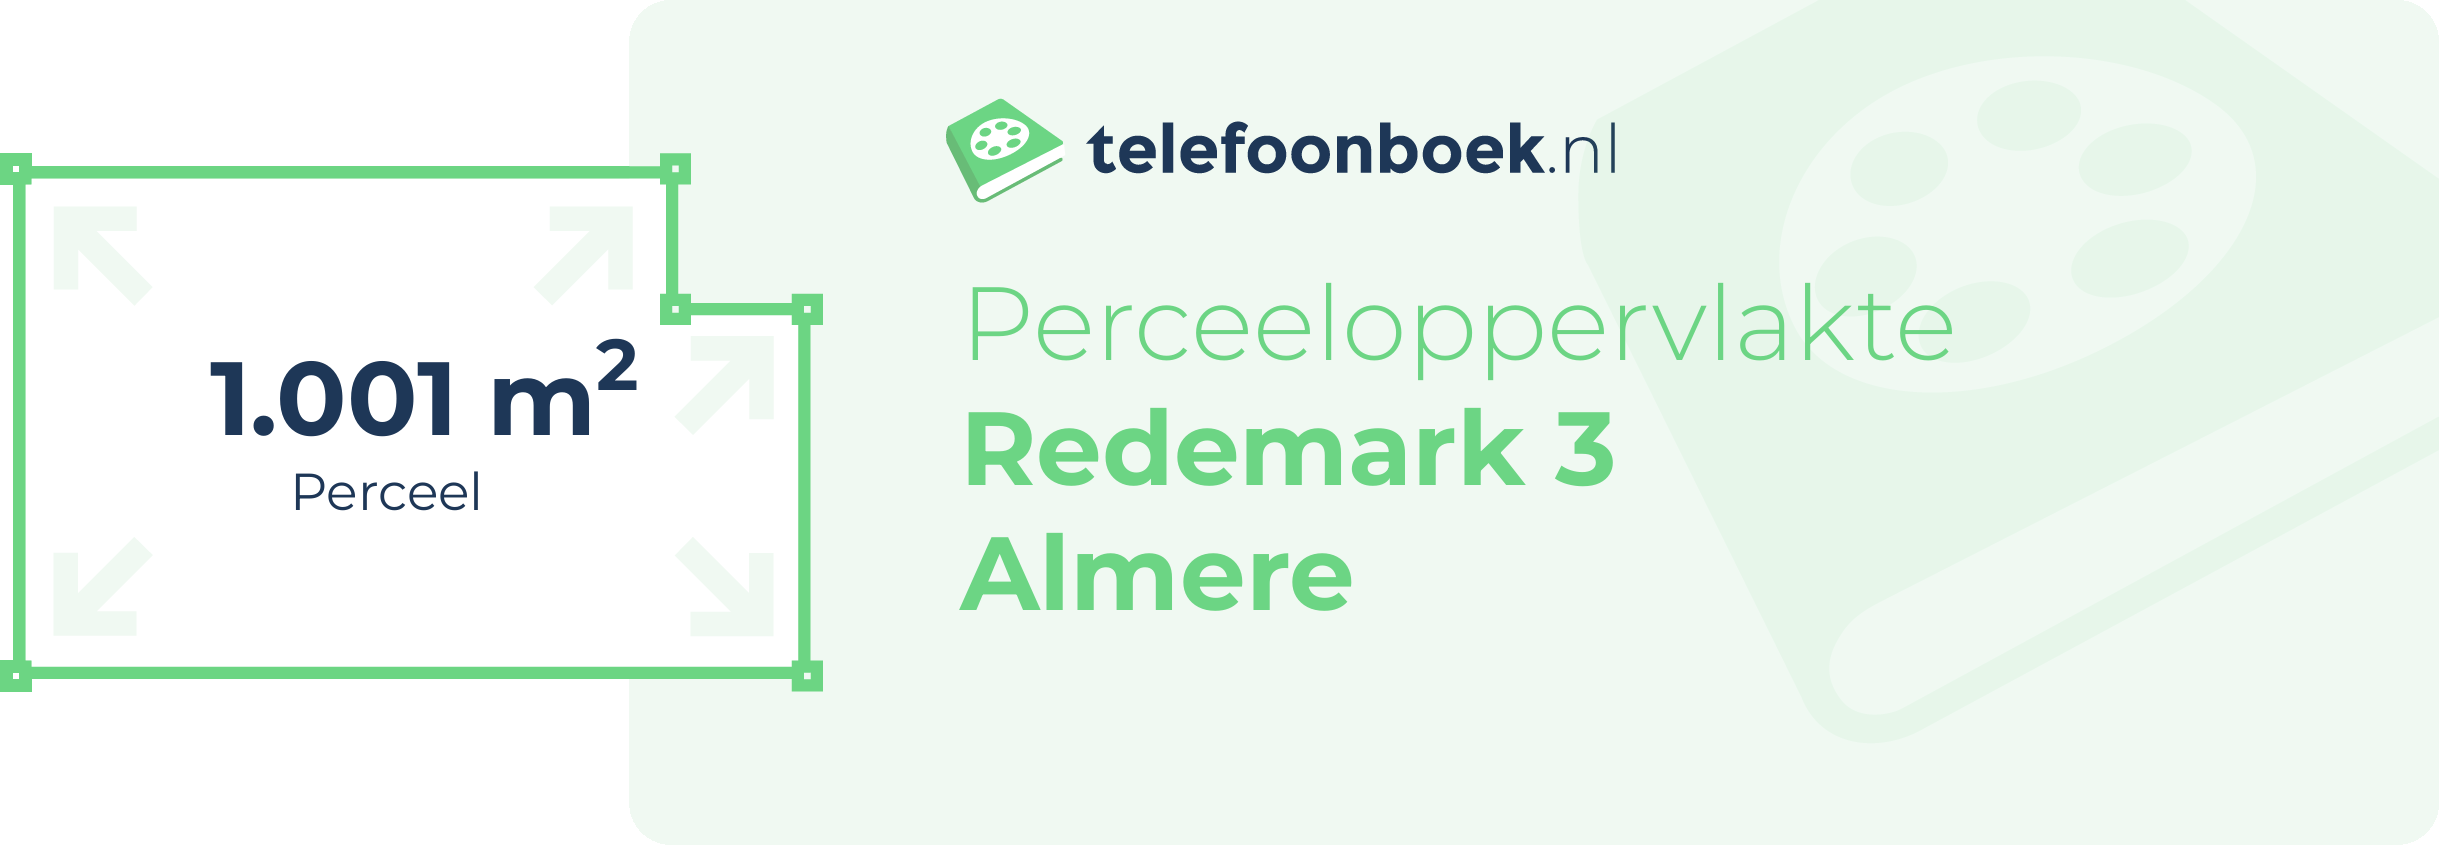 Perceeloppervlakte Redemark 3 Almere